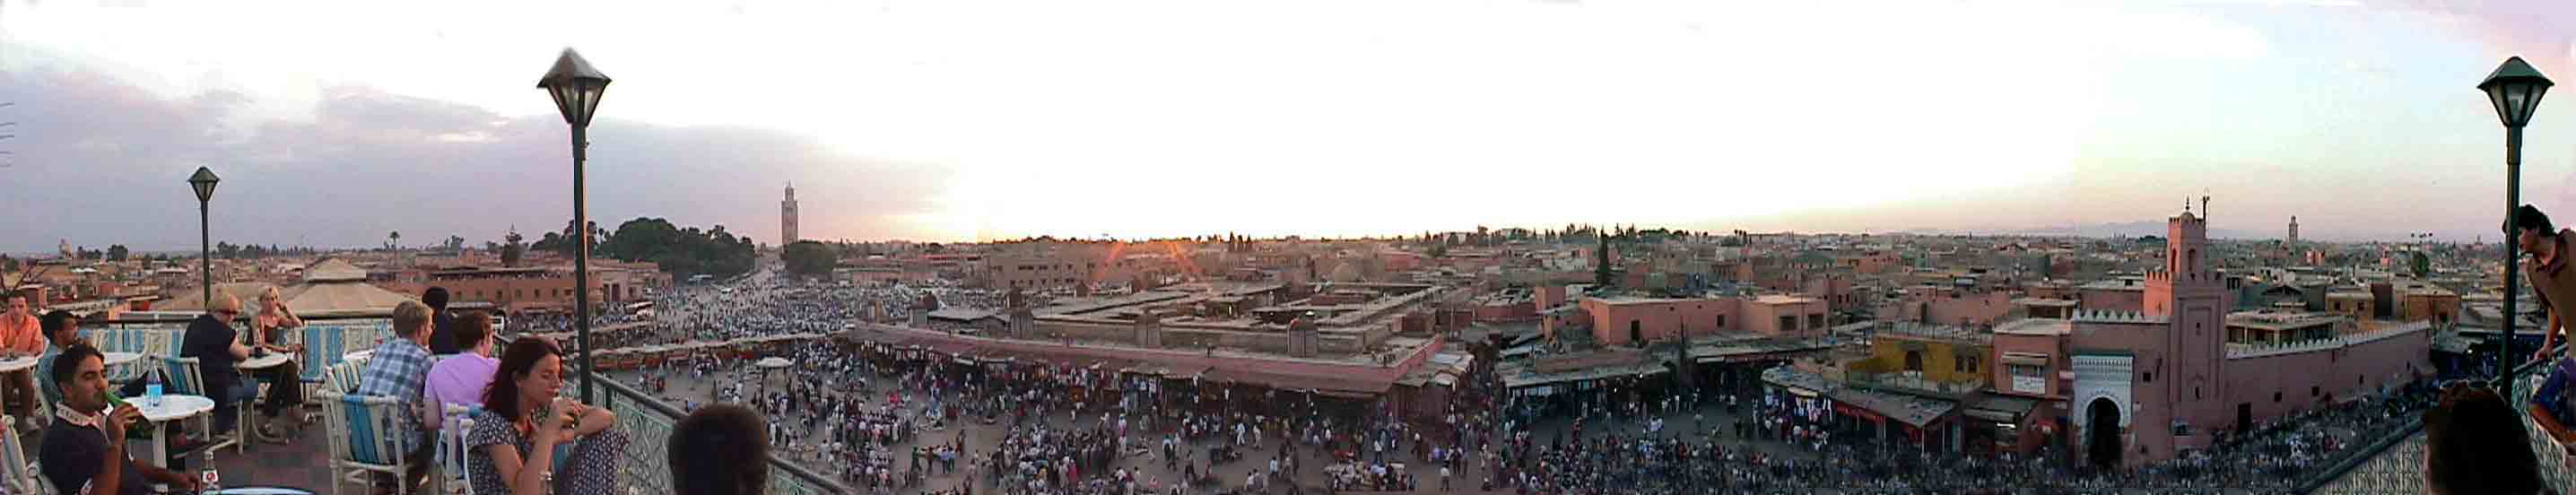 Vue panoramique de la place Jemaa El Fna